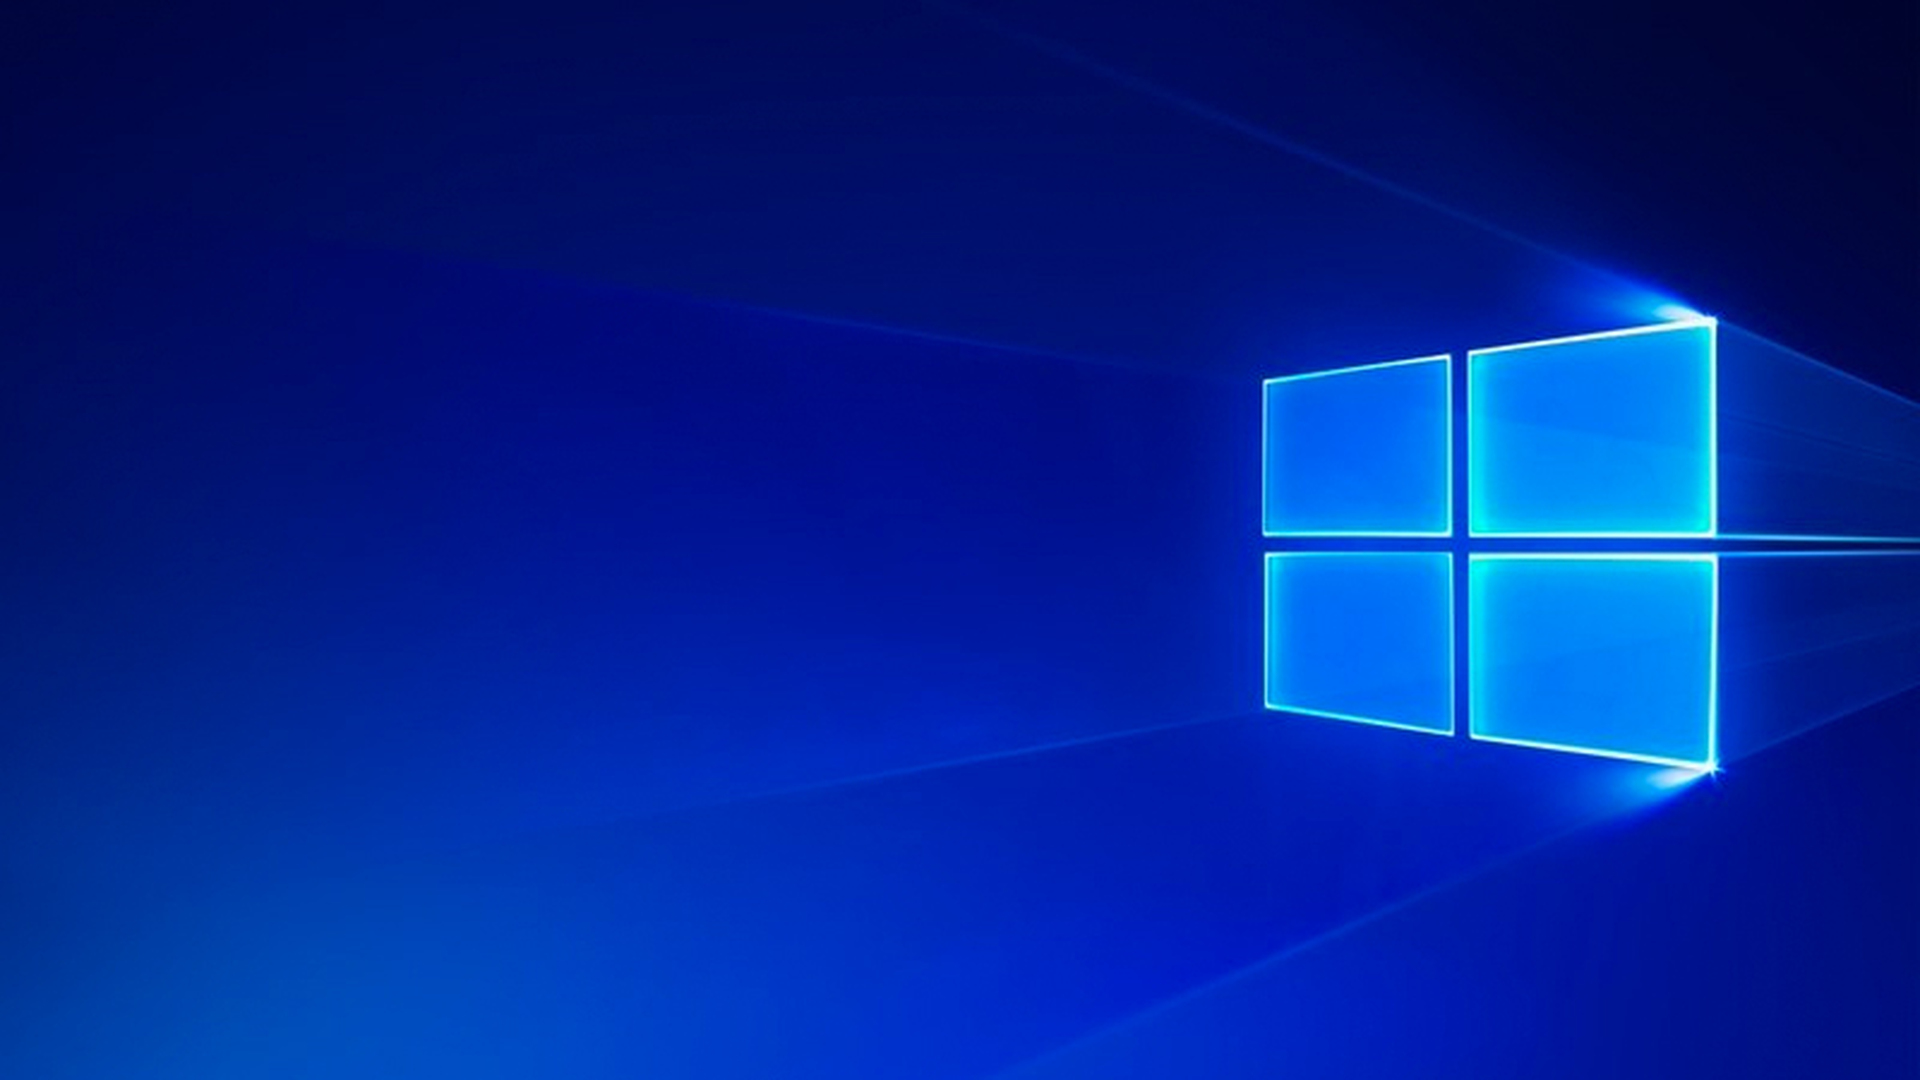 Ошибка System_Service_Exception в Windows 10 - решение (3 способа)